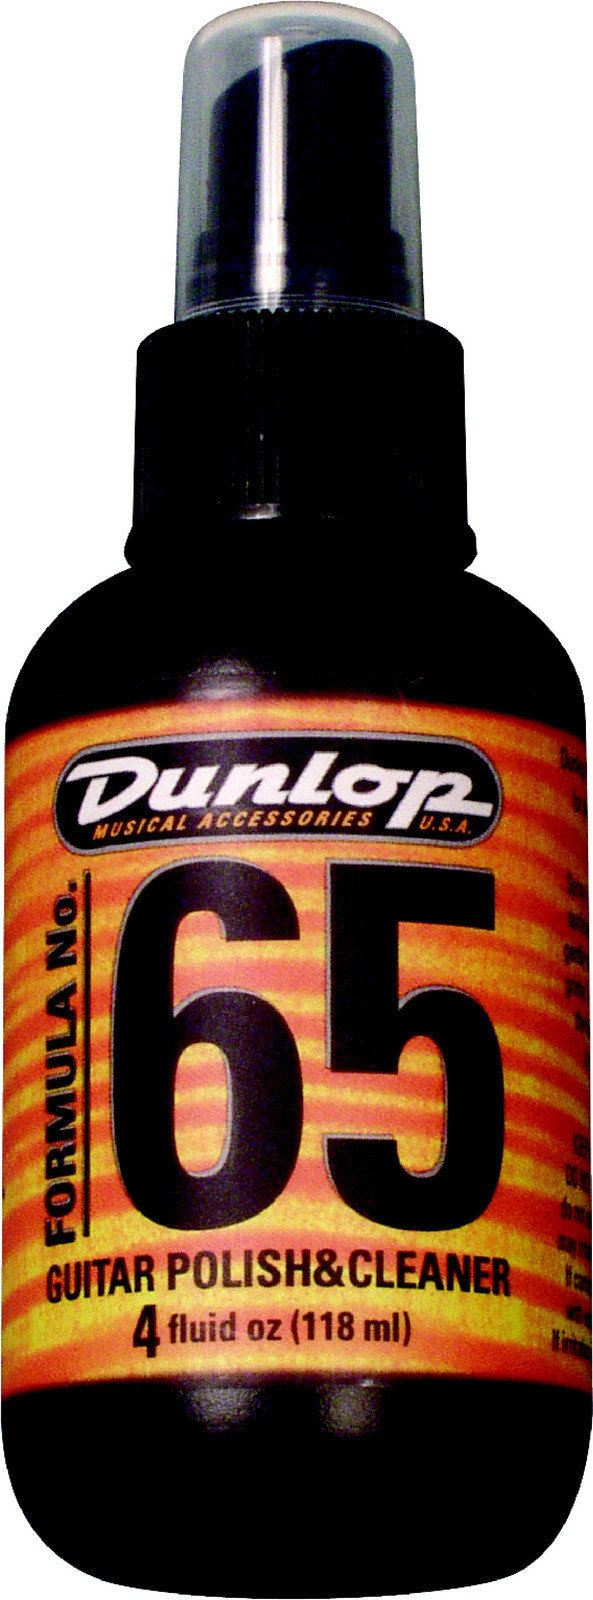 Prodotto Cura e Pulizia Dunlop 654